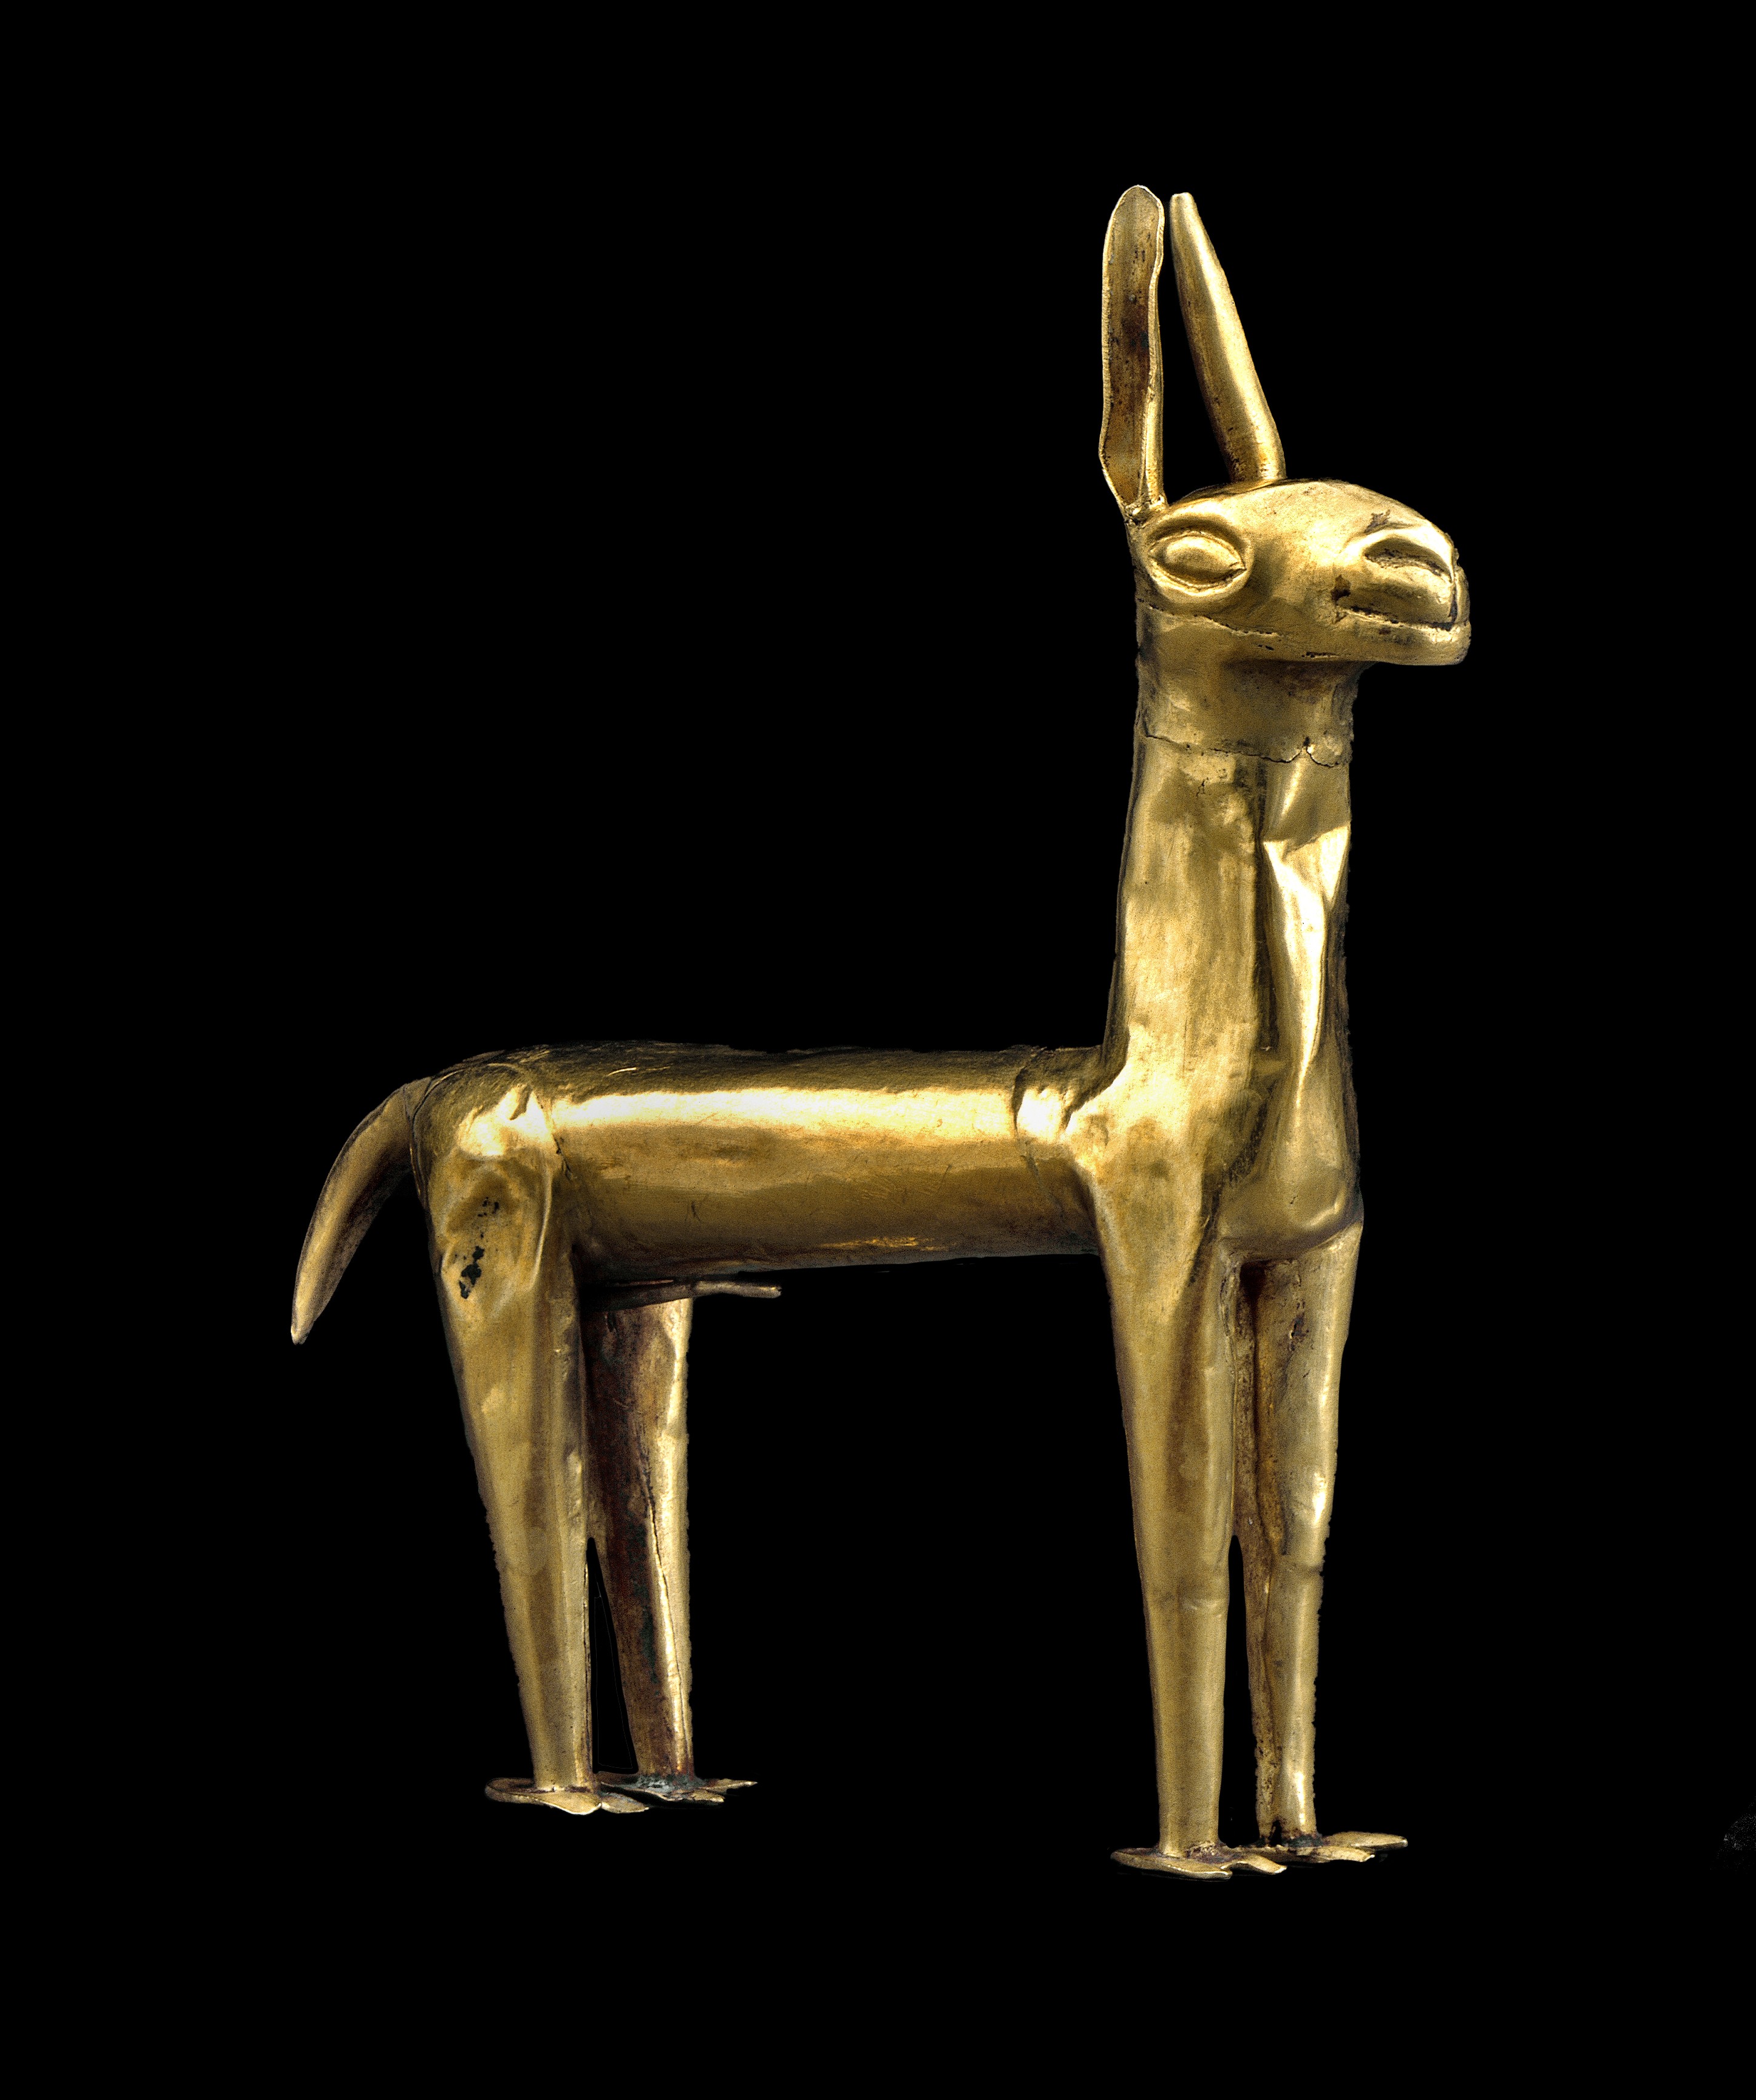 Llama feita em ouro.  (Foto: © The Trustees of the British Museum)